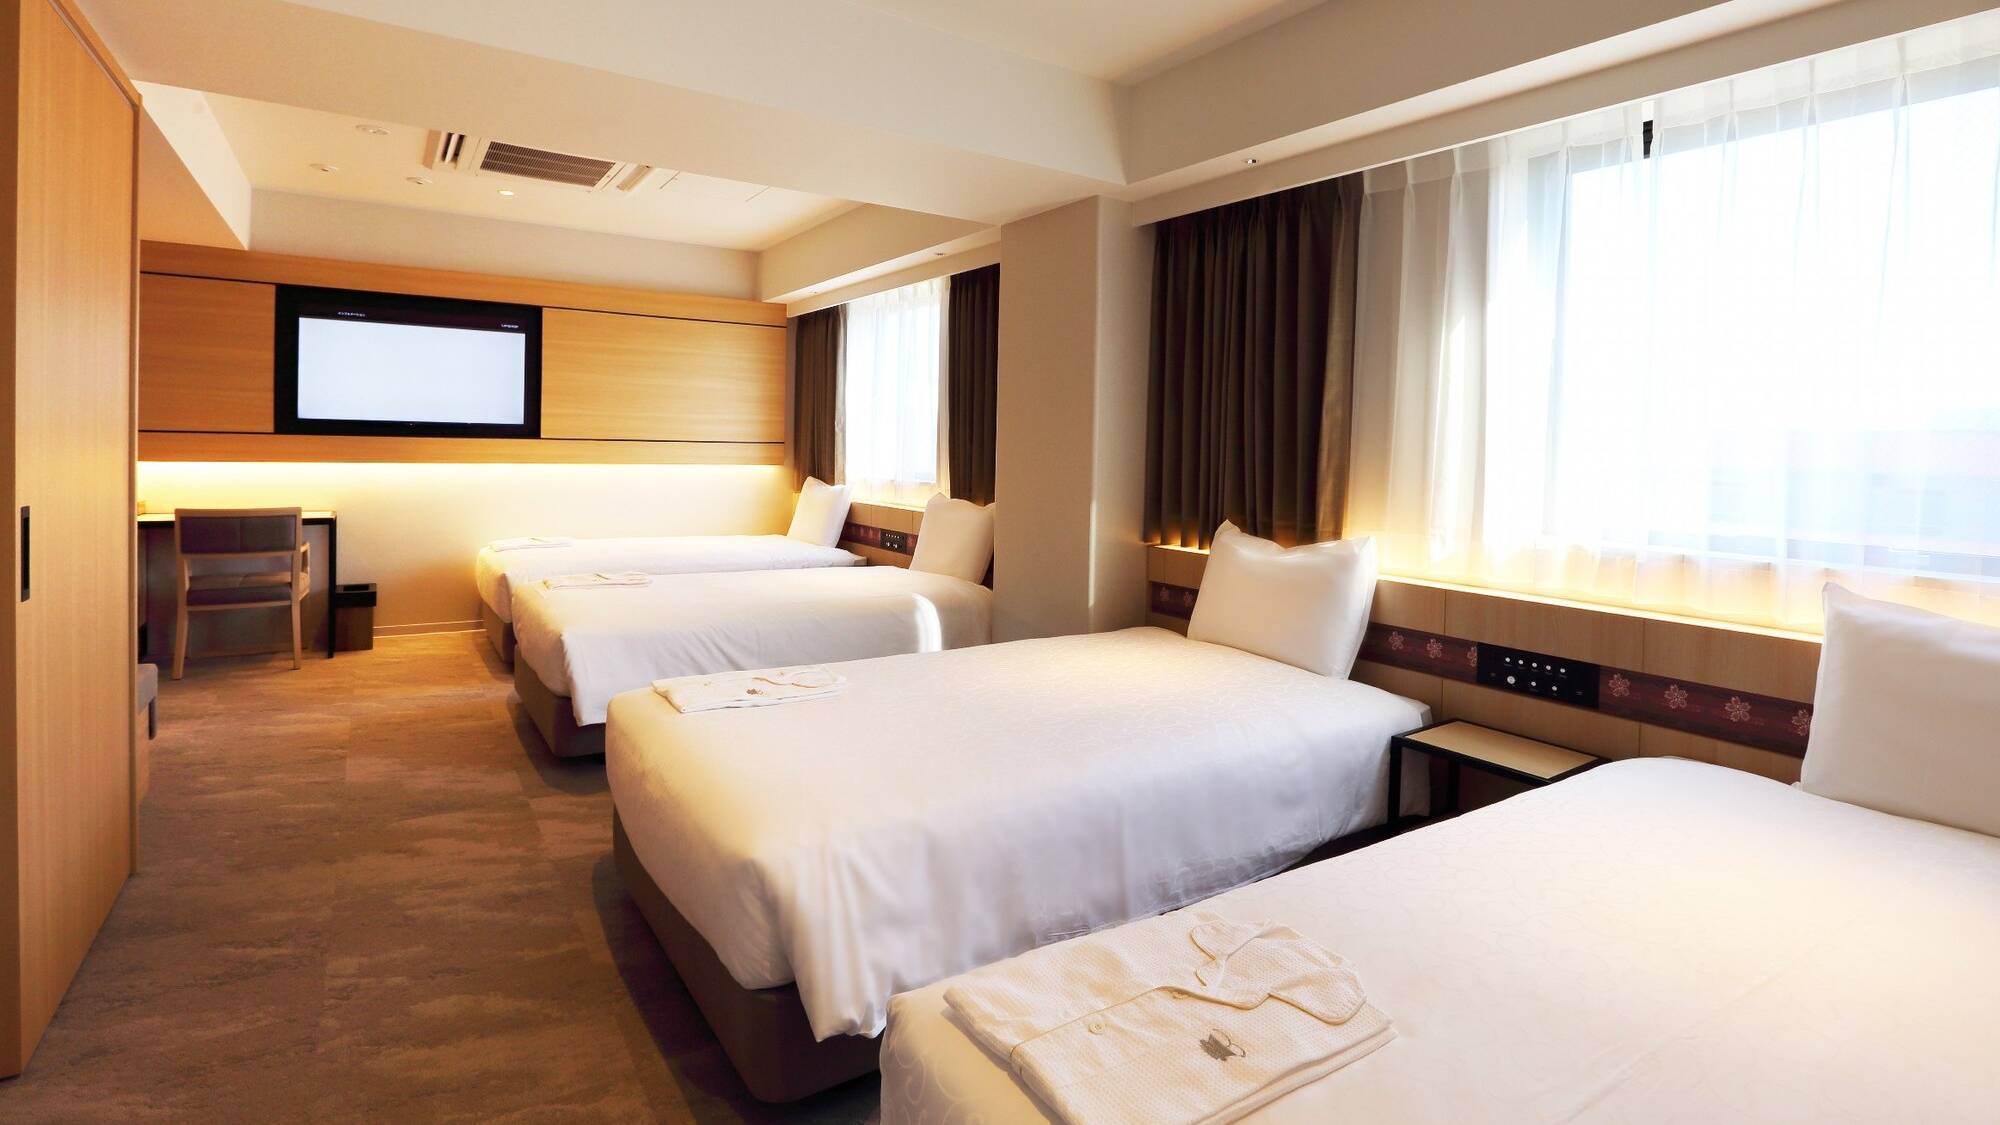 フォースルーム奈良のホテルでは珍しく４つもベッドのあるお部屋です。女子会や家族旅行などに最適♪